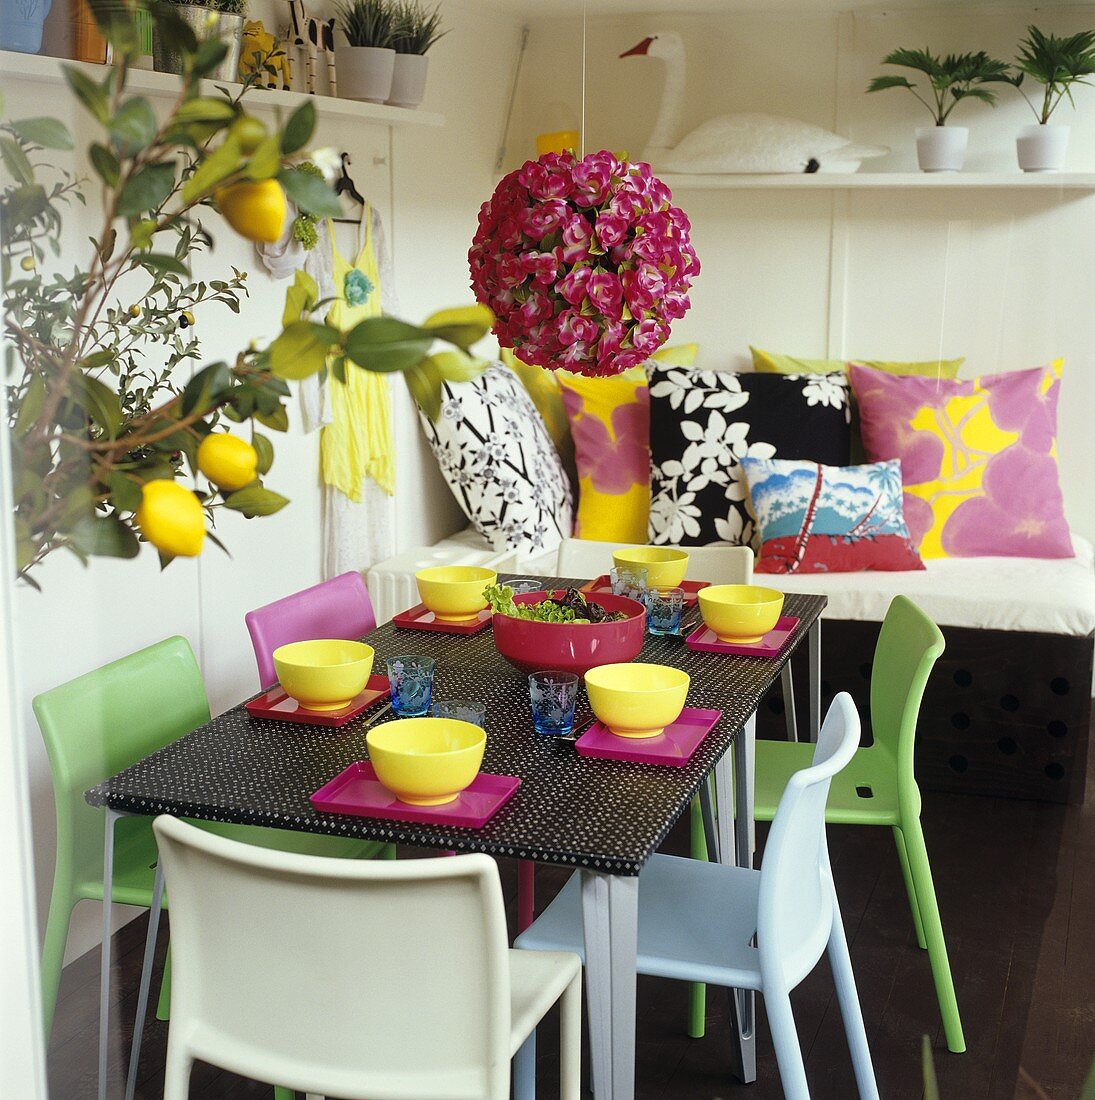 Bunt gedeckter Tisch mit Salatschüssel, Blumendeko